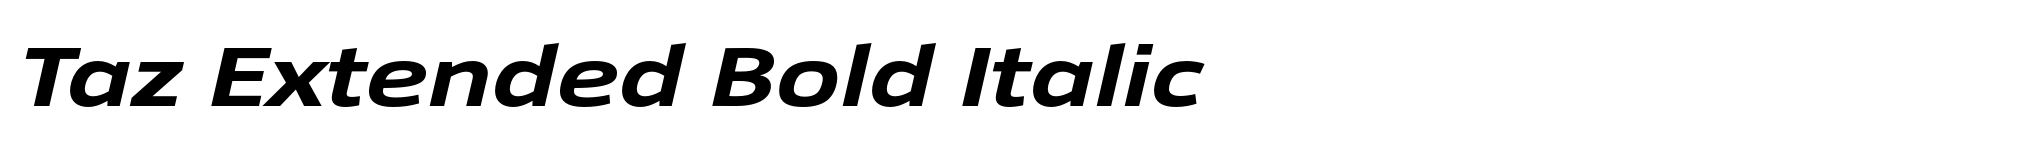 Taz Extended Bold Italic image